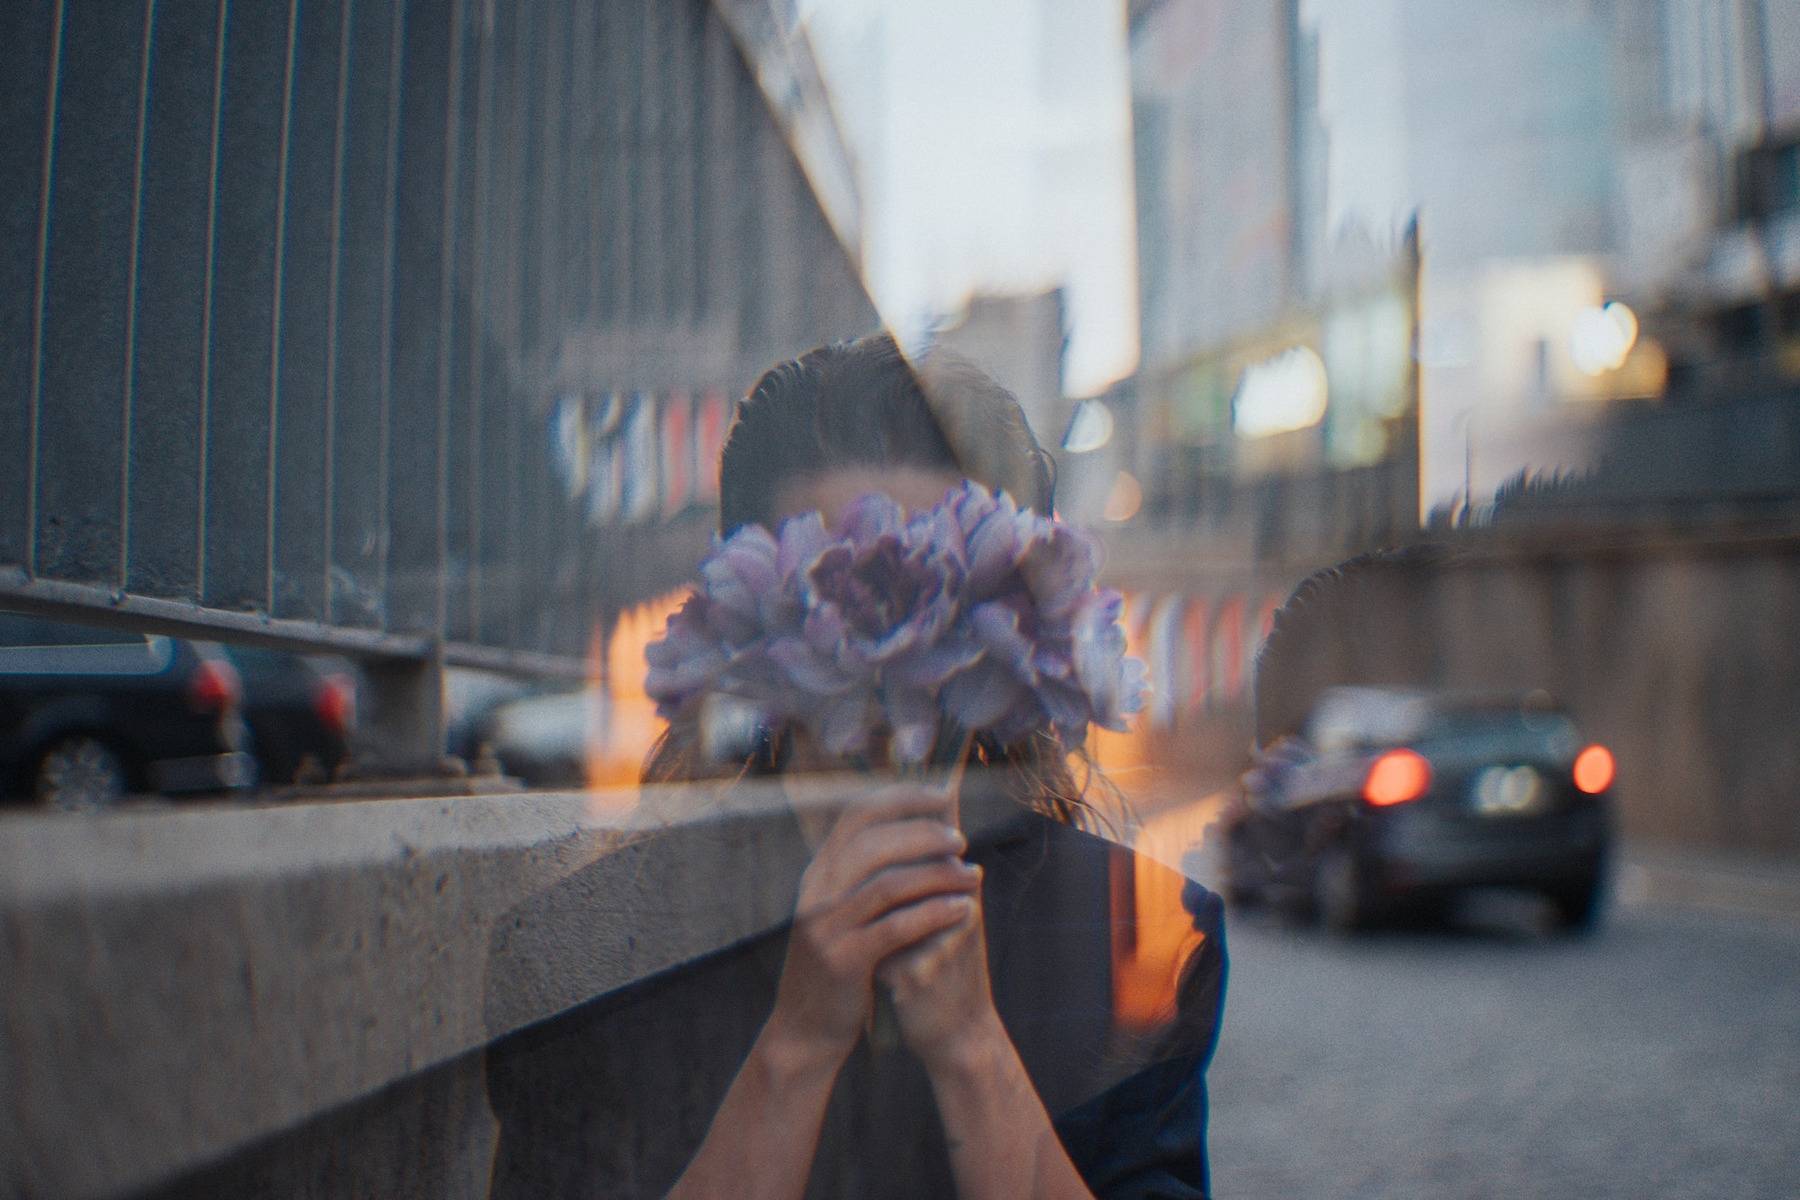 Eine Frau versteckt ihr Gesicht hinter einem Strauß Blumen